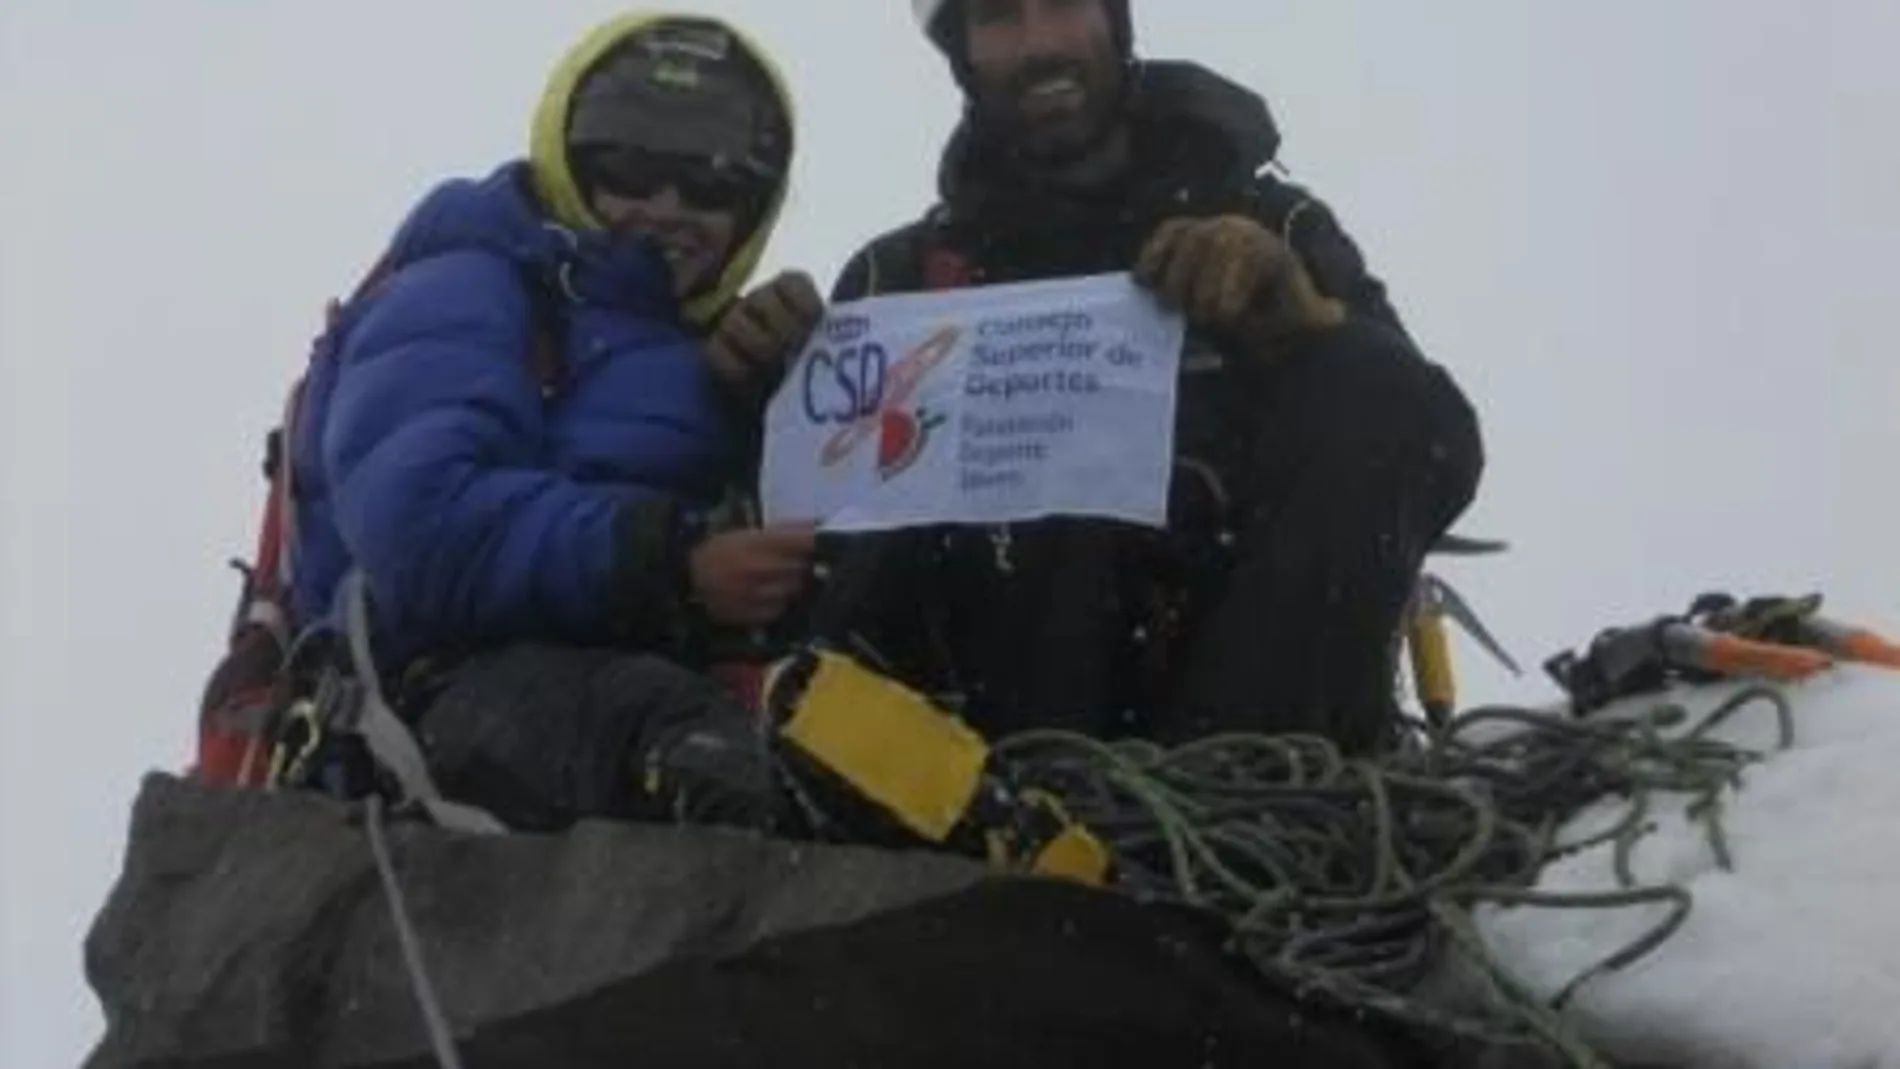 El equipo español holló la cima, a 5.860 metros de altura